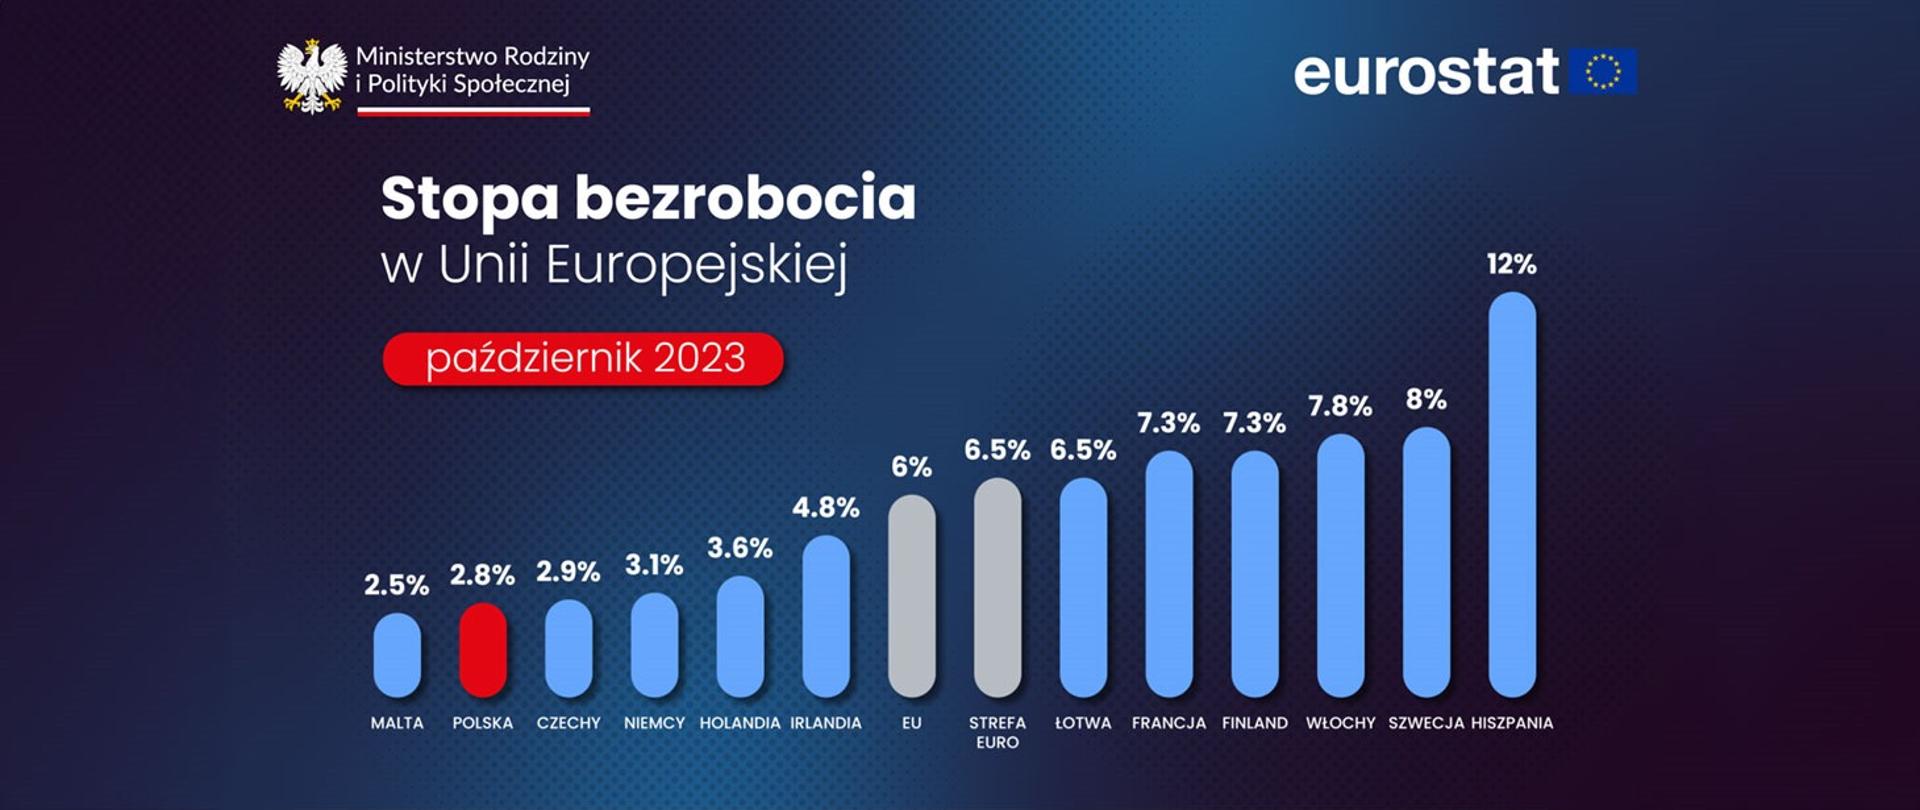 Polska na drugim miejscu w UE z najniższym bezrobociem